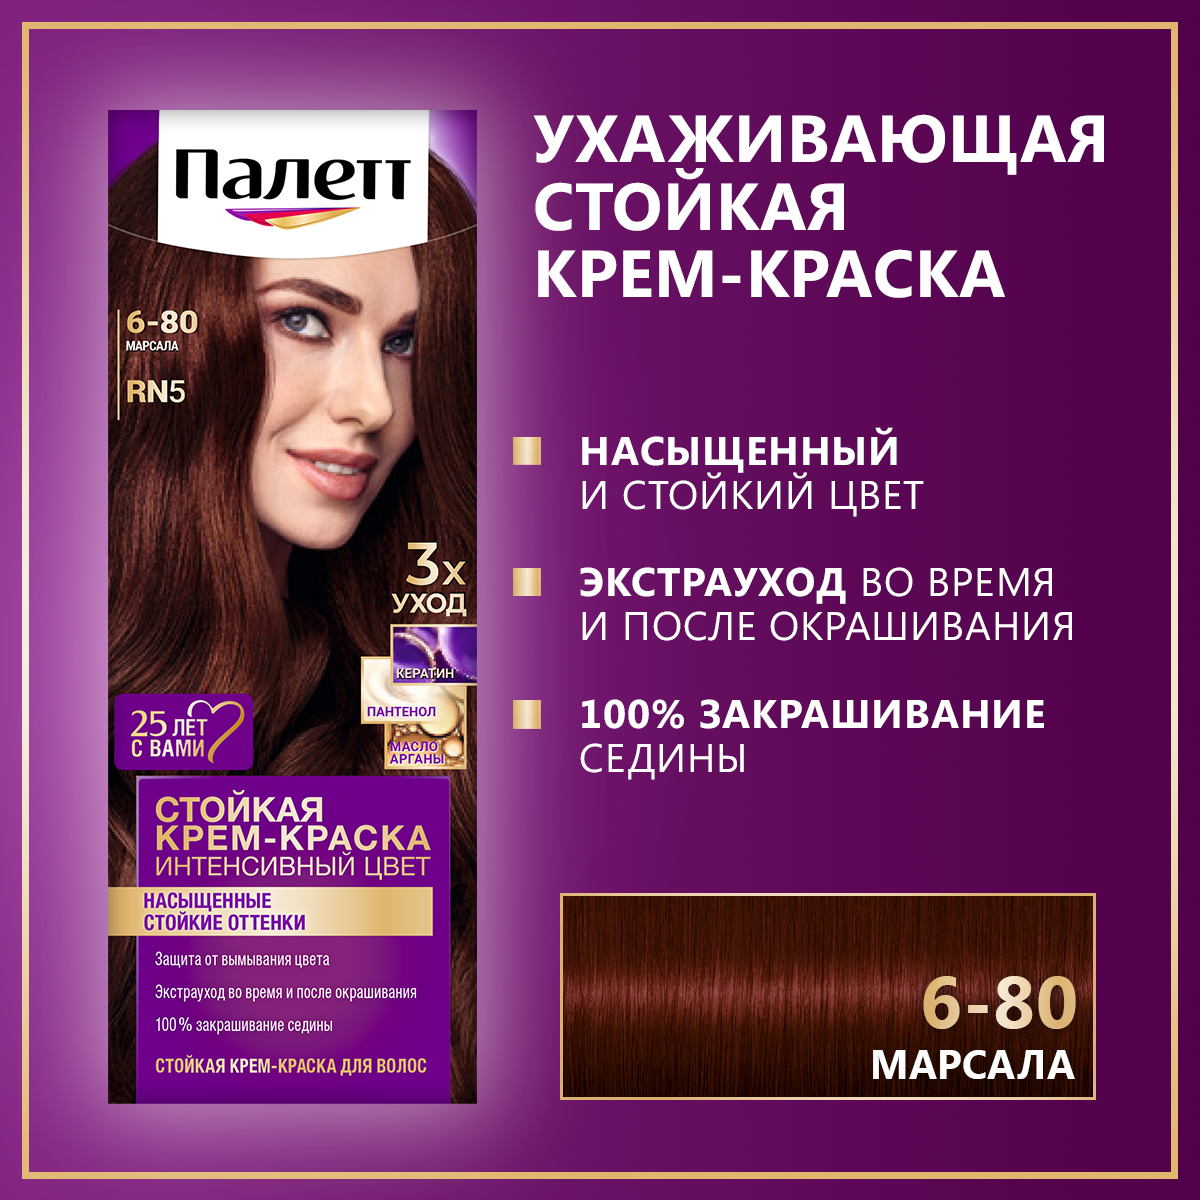 Стойкая крем-краска для волос Палетт Интенсивный цвет 6-80 (RN5) Марсала, 110 мл стойкая крем краска для волос палетт интенсивный 6 80 rn5 марсала 110 мл